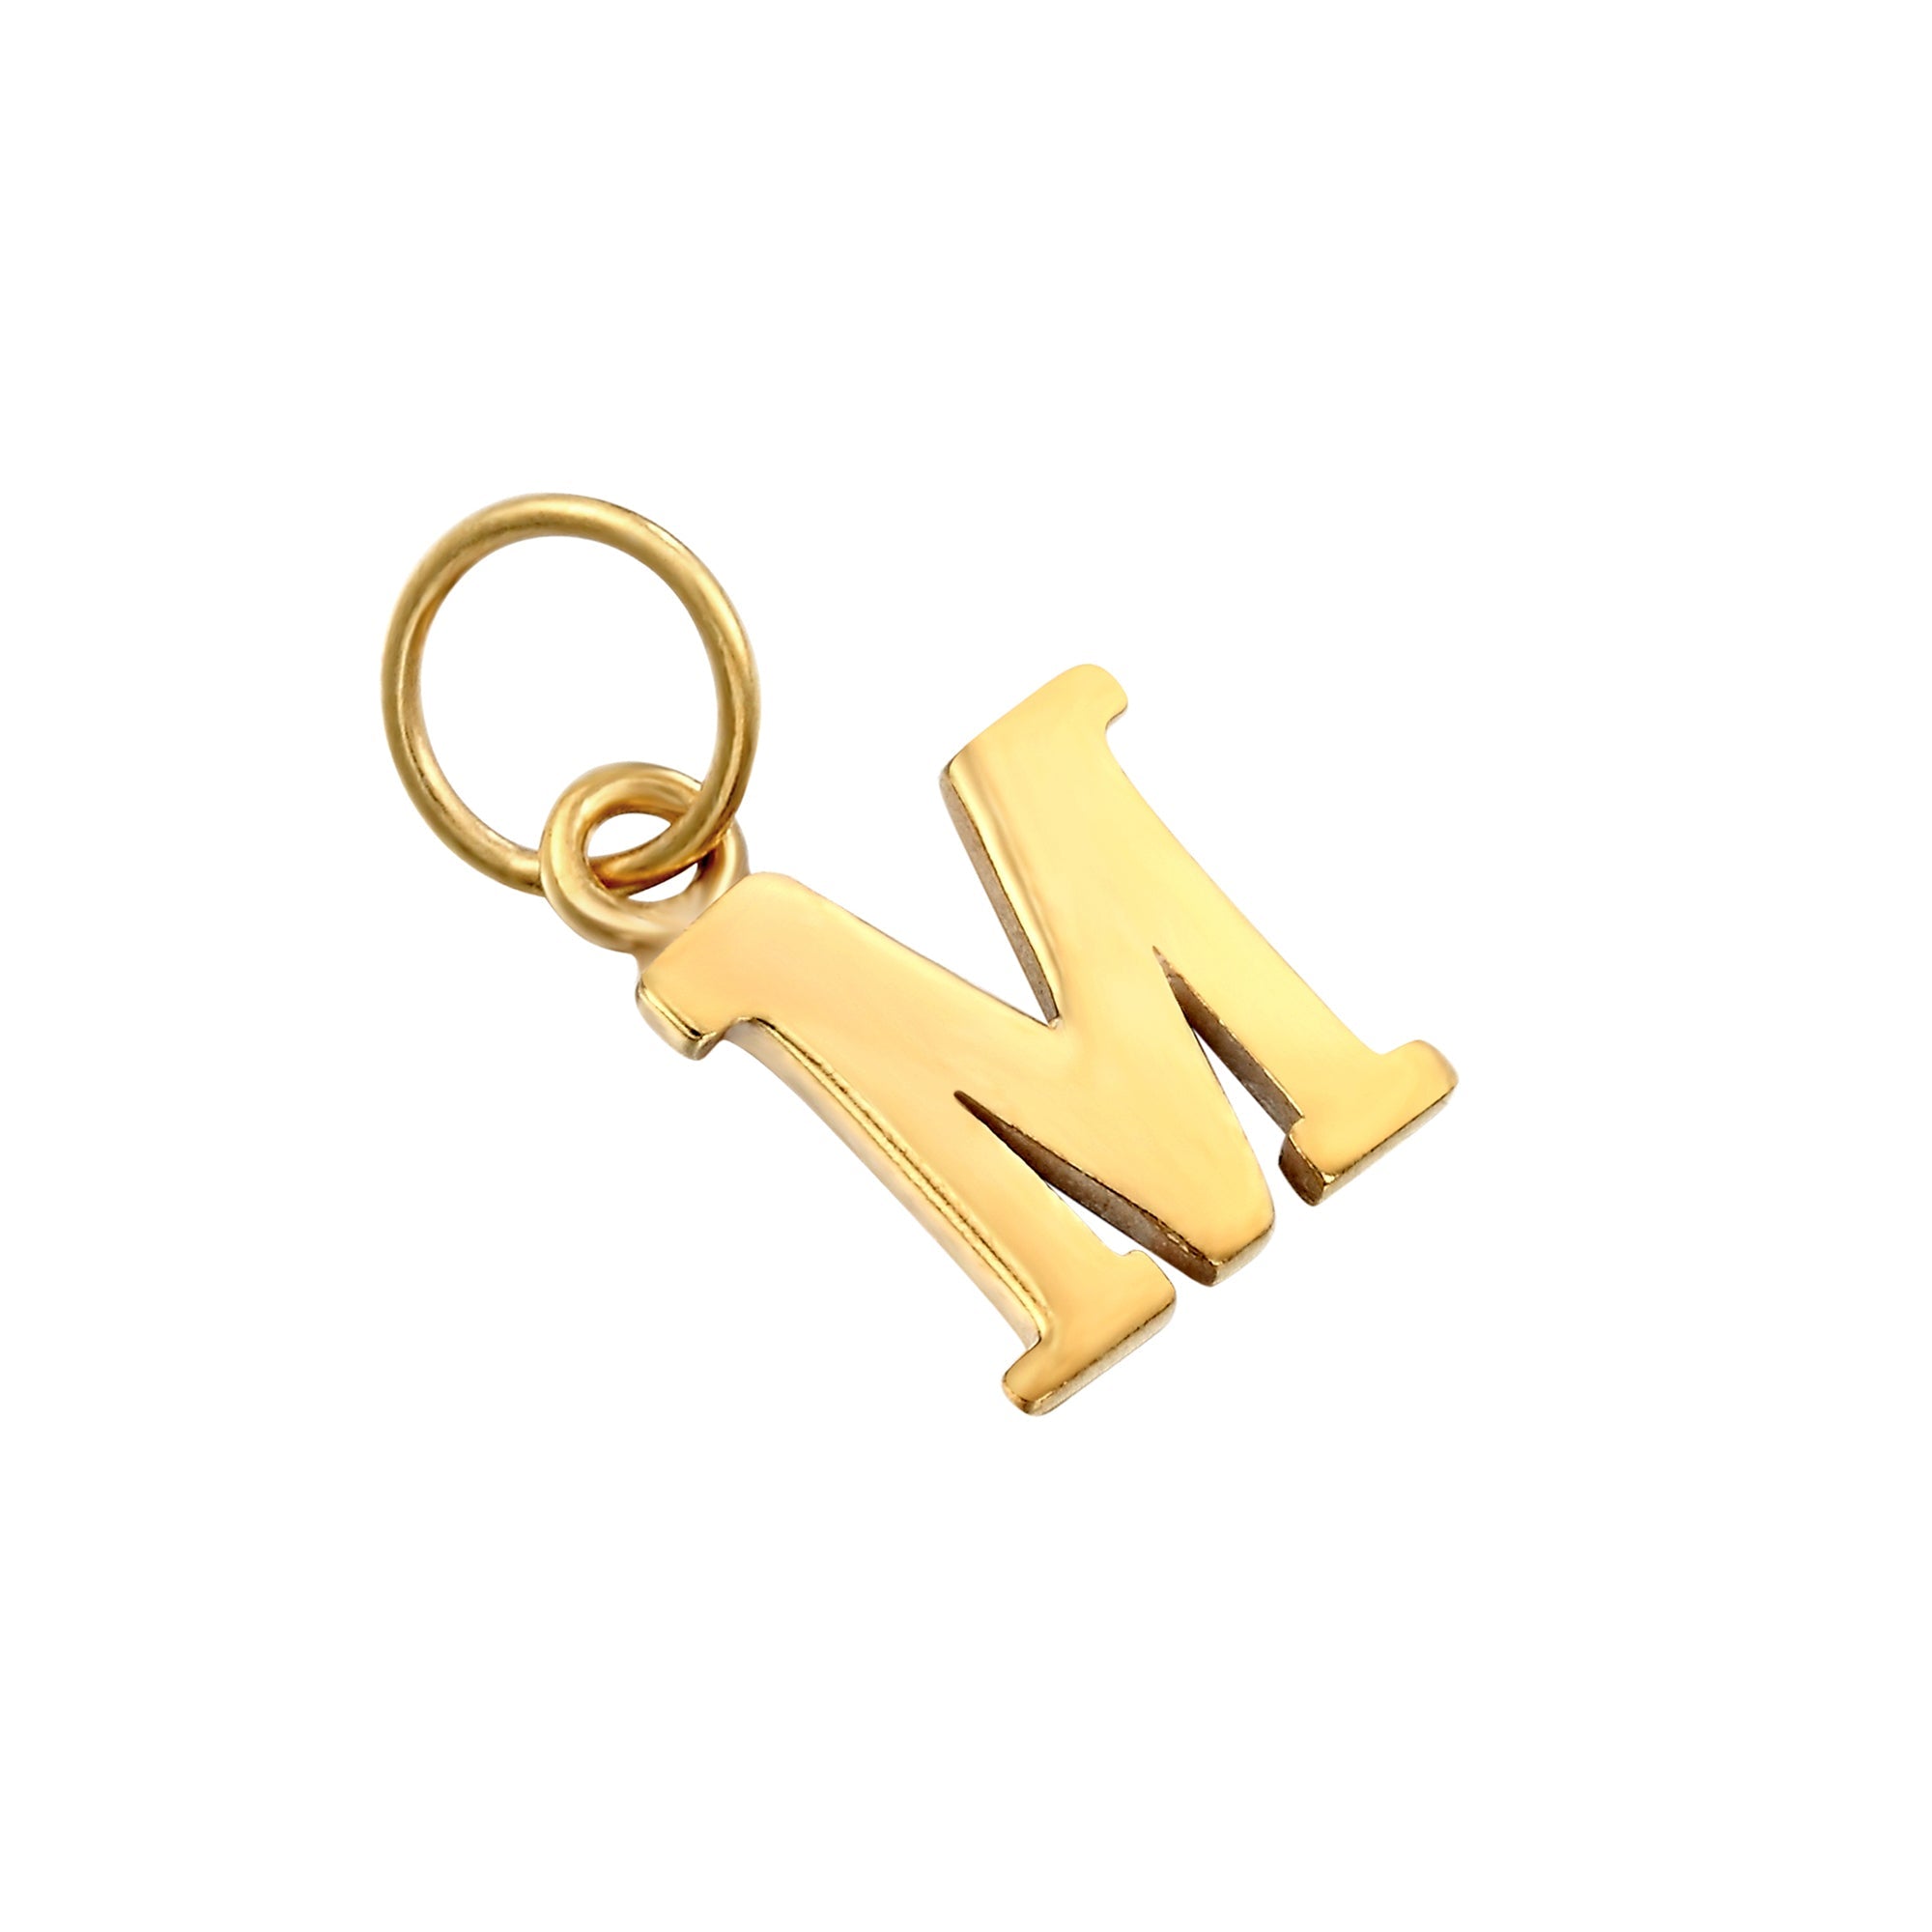 18ct Gold Vermeil Classic Font Alphabet Letter Charm